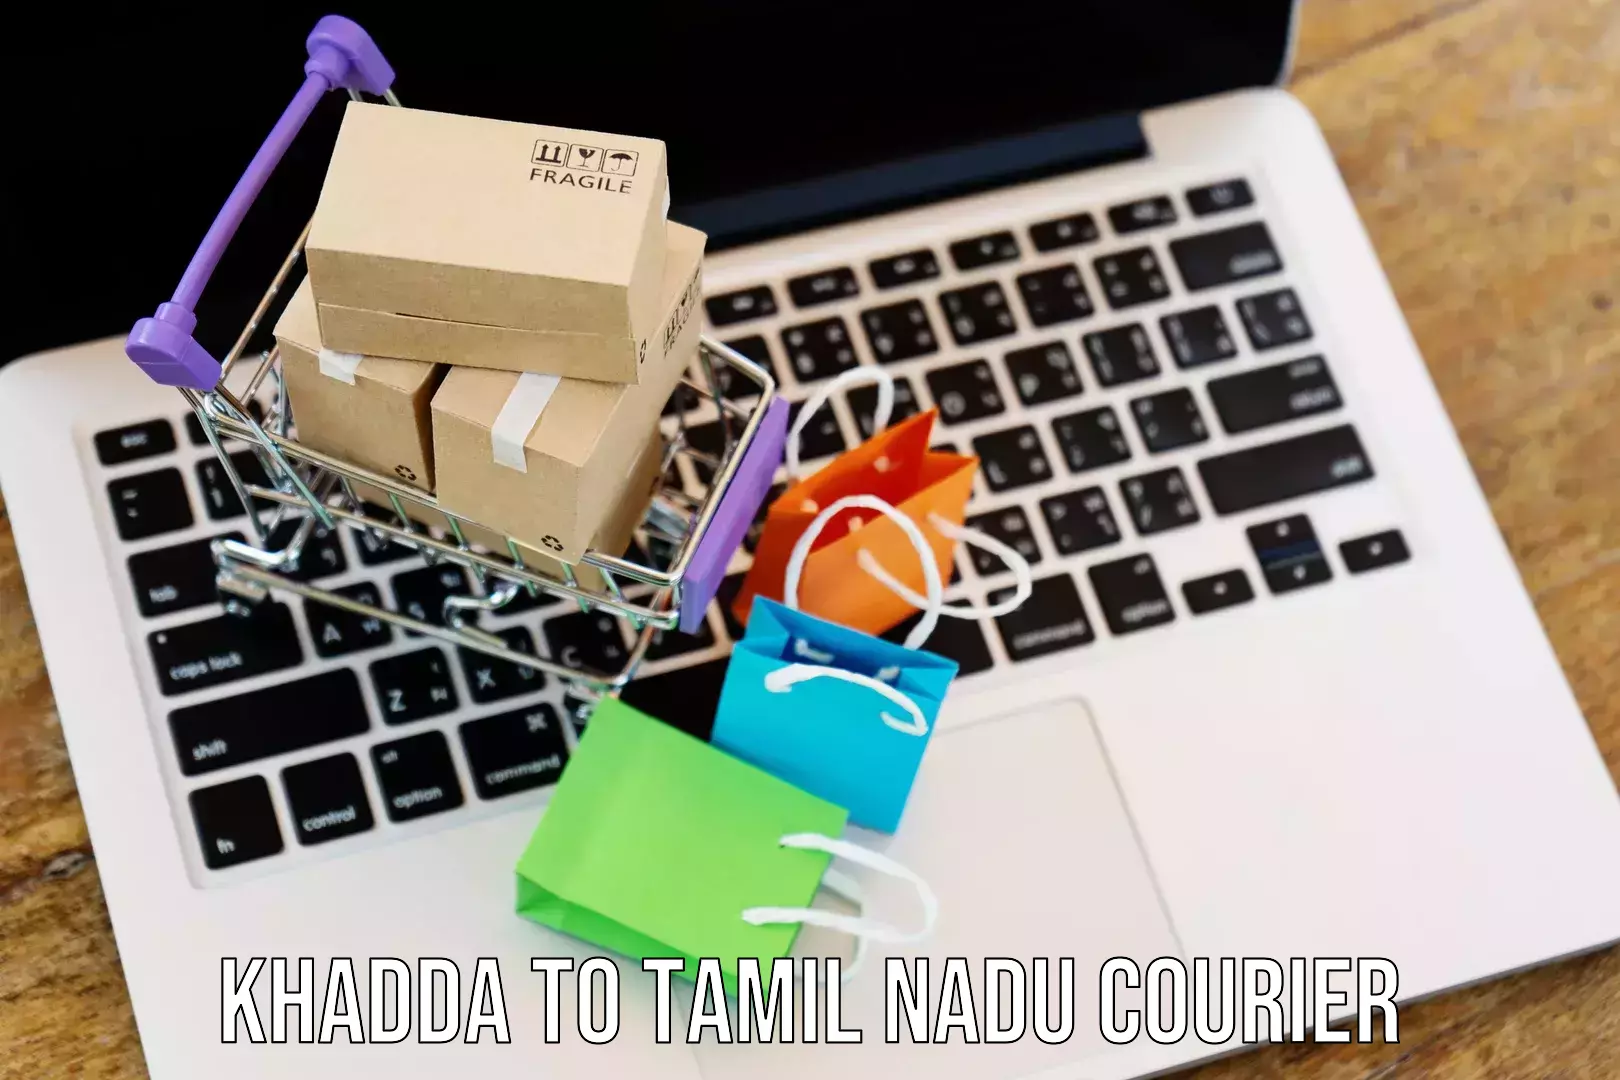 Business shipping needs Khadda to Tamil Nadu